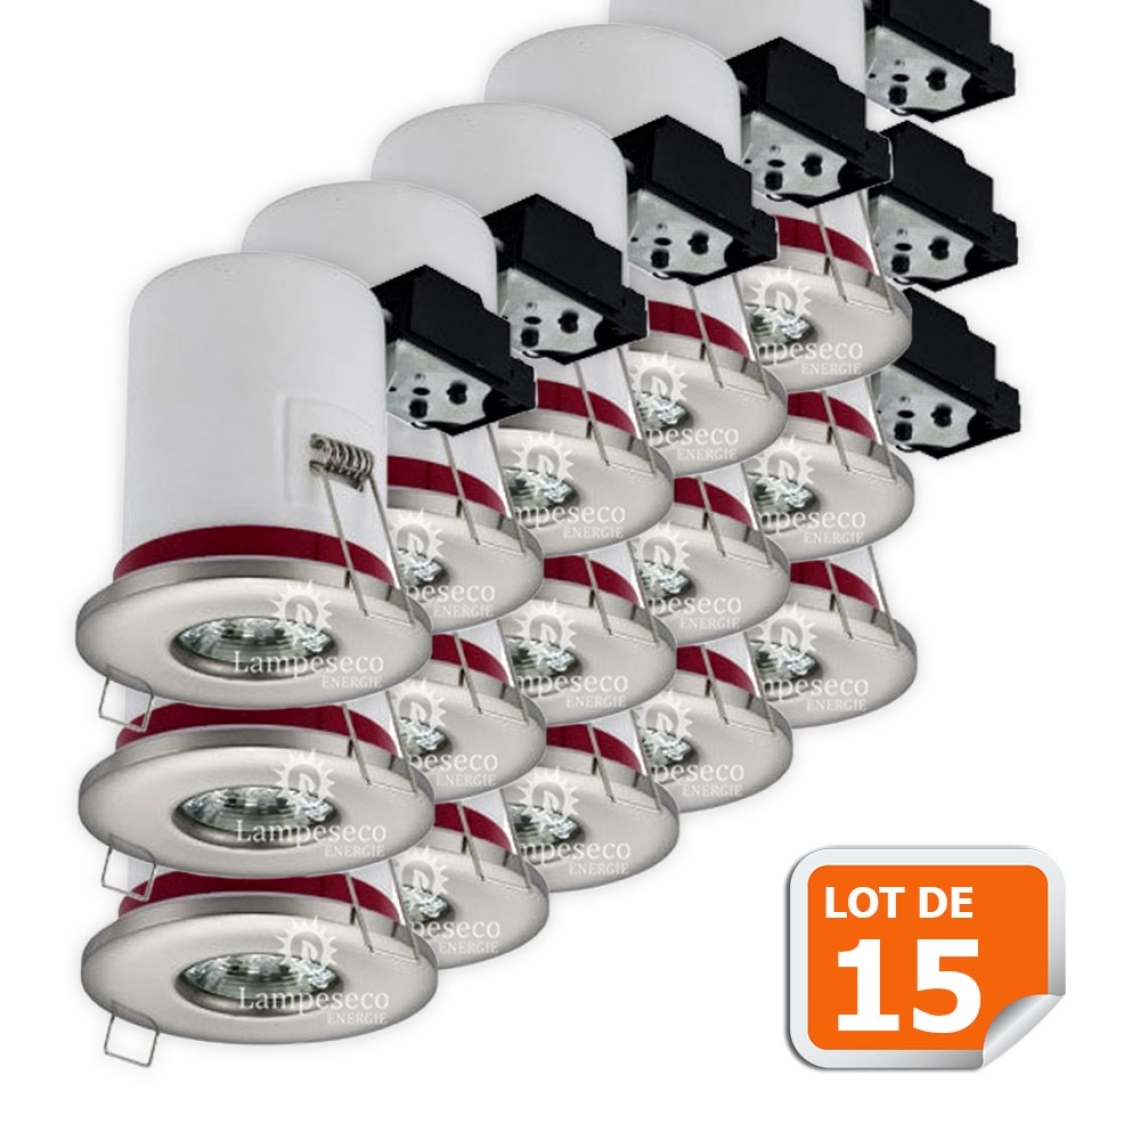 Lampesecoenergie - Lot de 15 Support de spot BBC Etanche IP65 Inox 87mm avec douille GU10 automatique ref. 830 - Moulures et goulottes